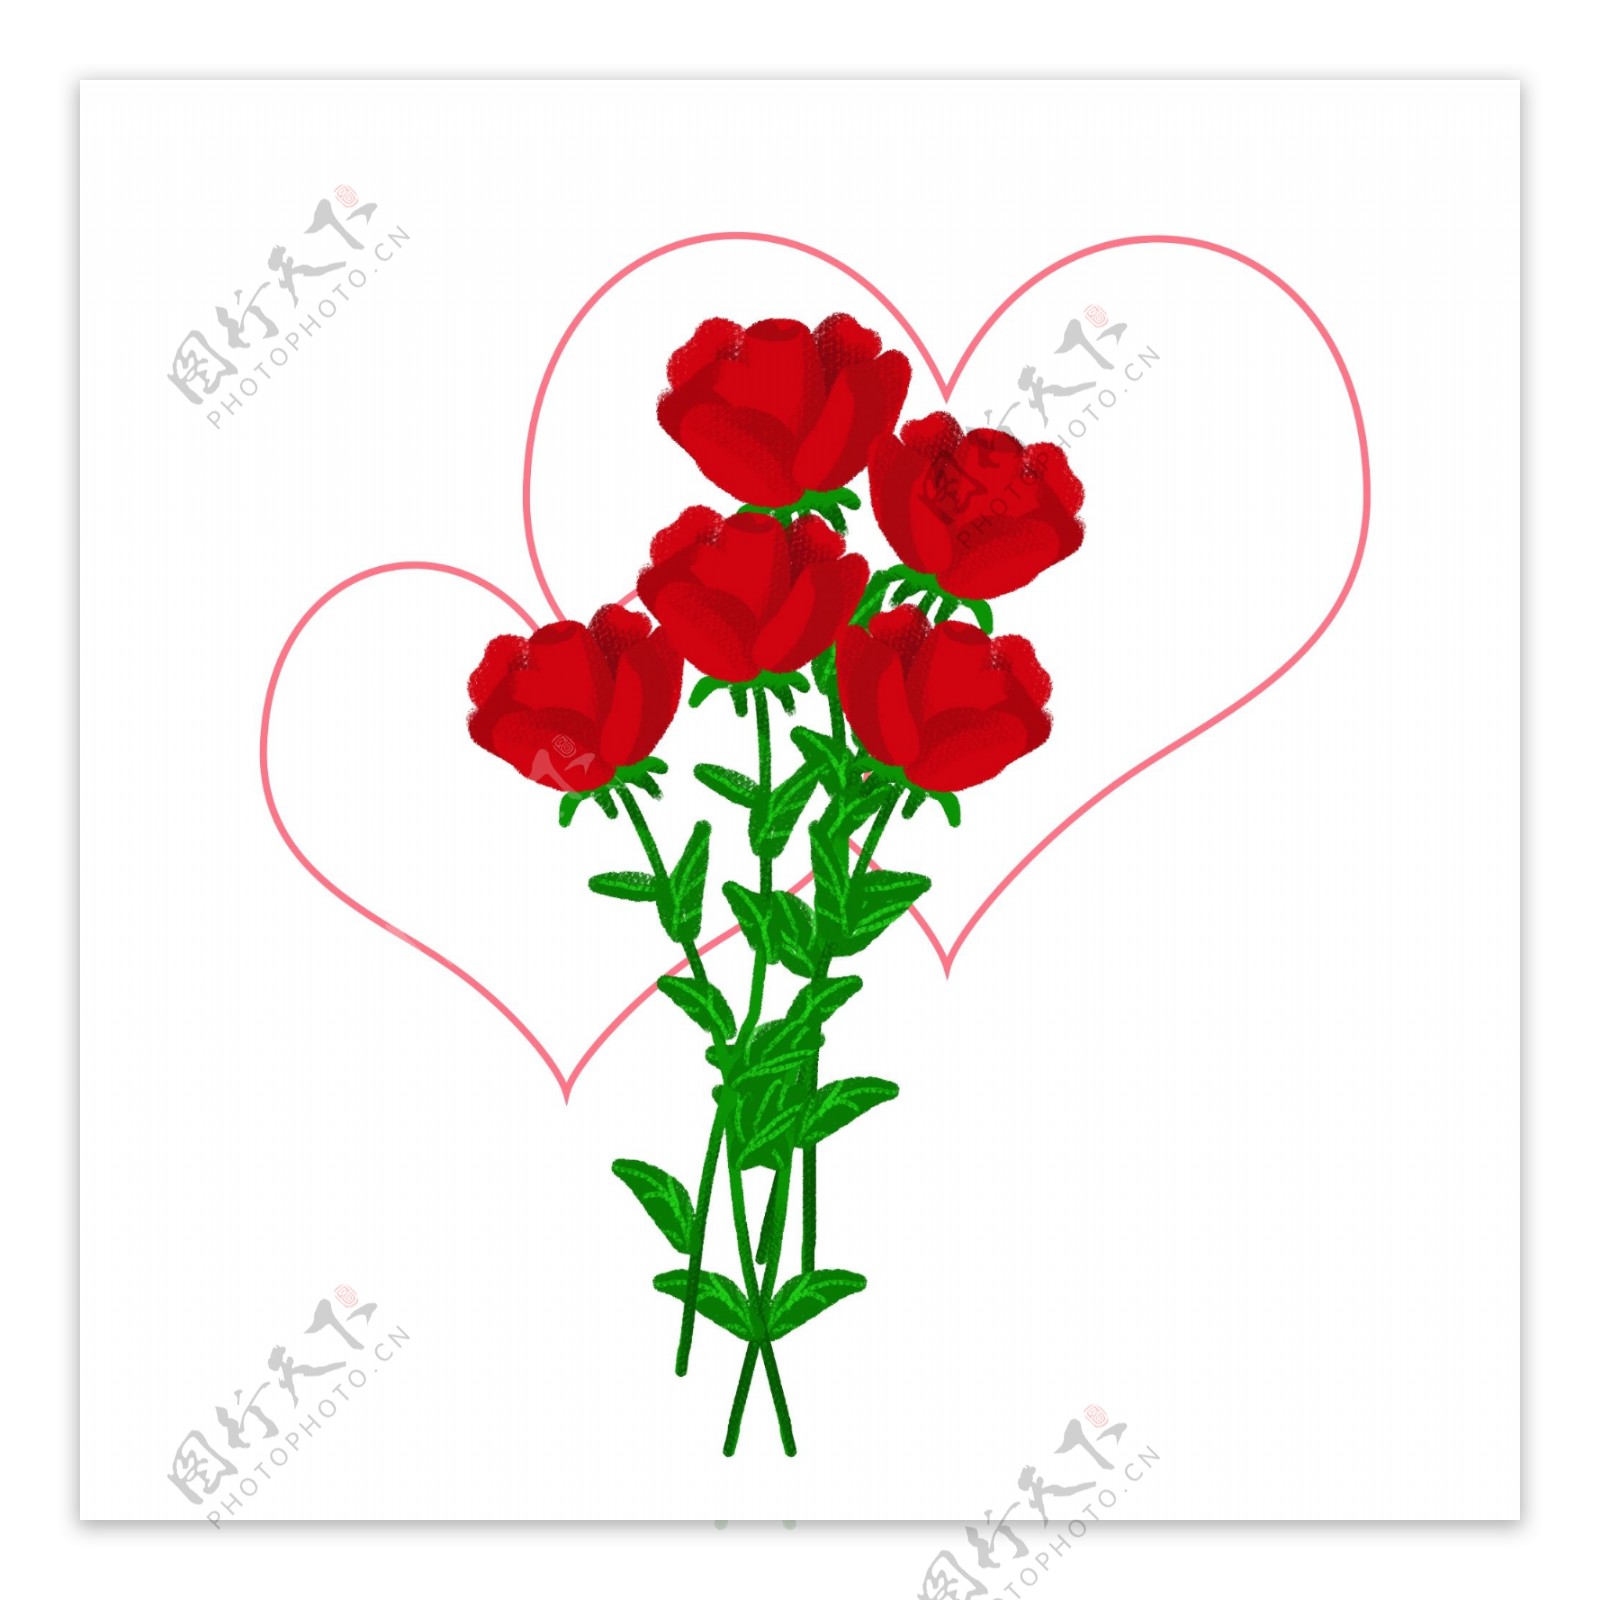 红色玫瑰花束爱心手绘玫瑰花